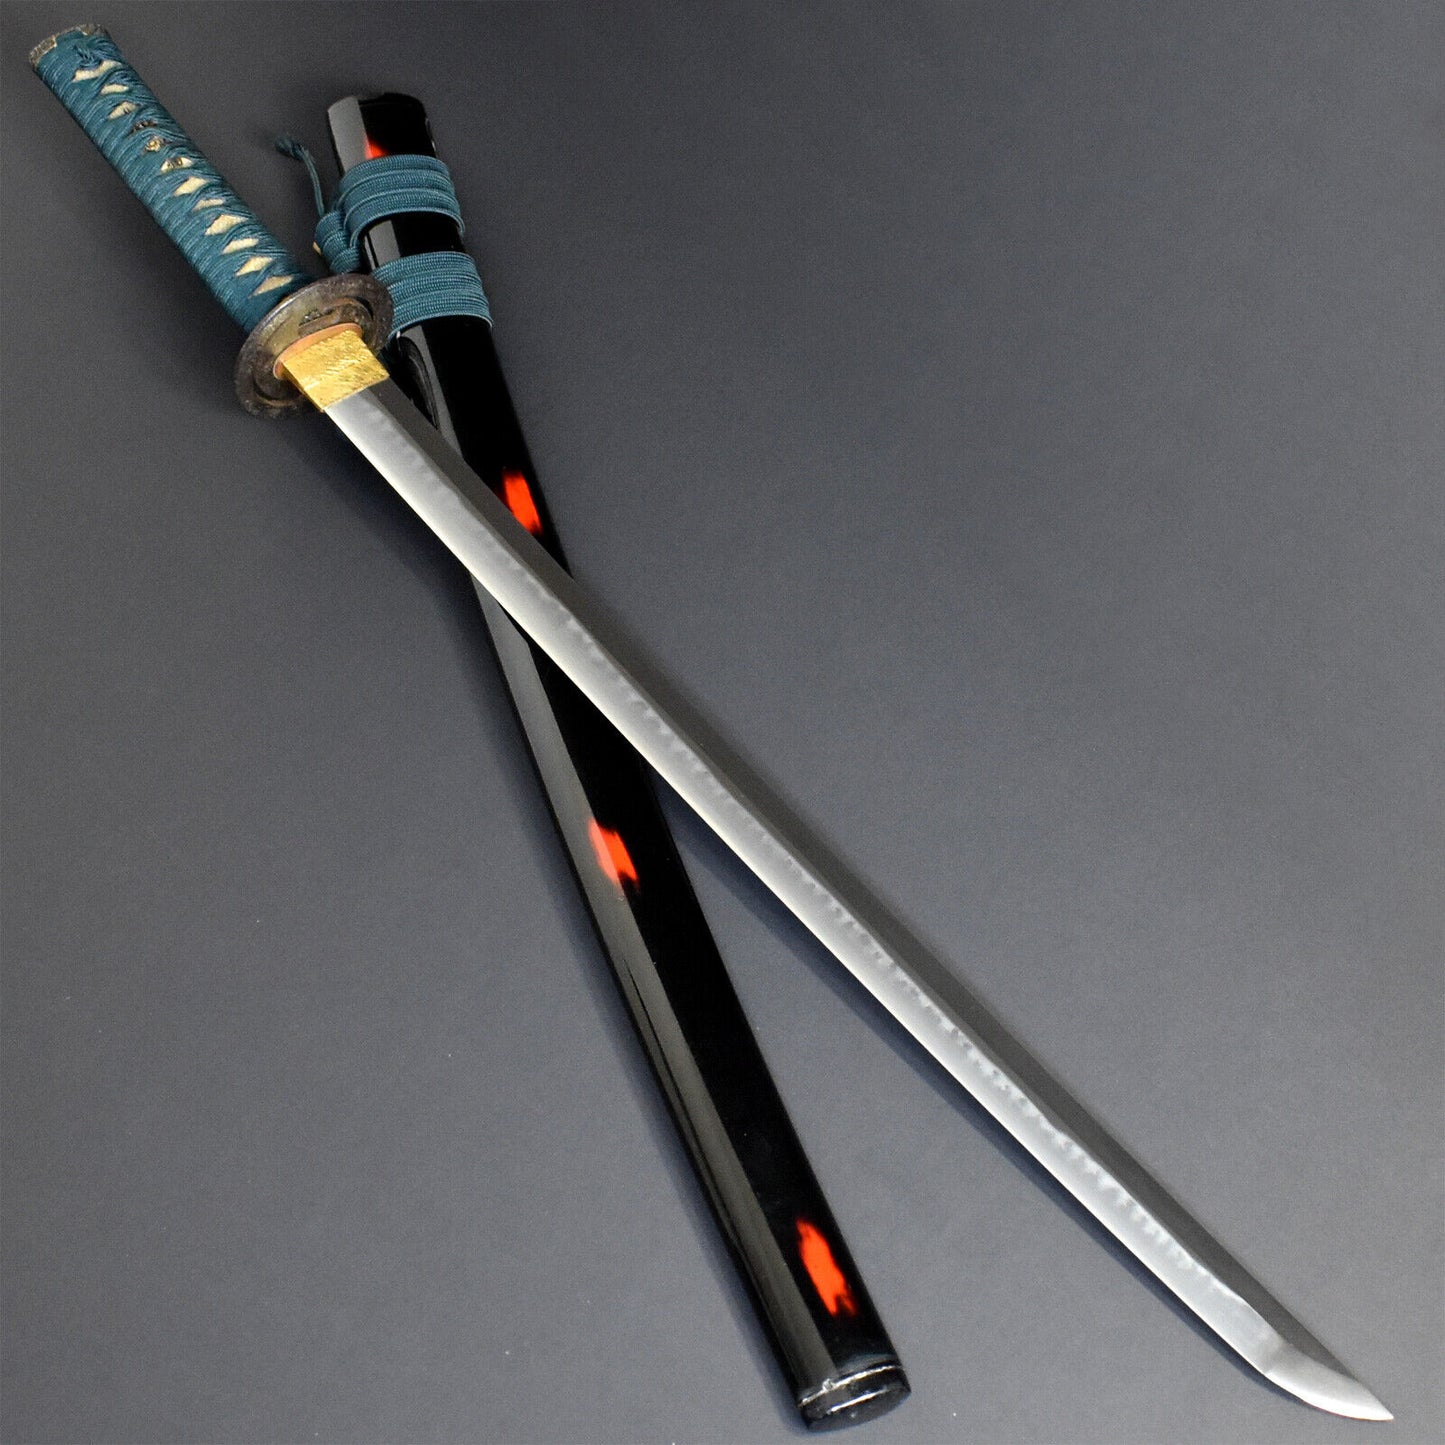 Authentic Antique Edo Era Japanese Katana Samurai Sword Wakizashi Echizen Seki Weapon Tamahagane.